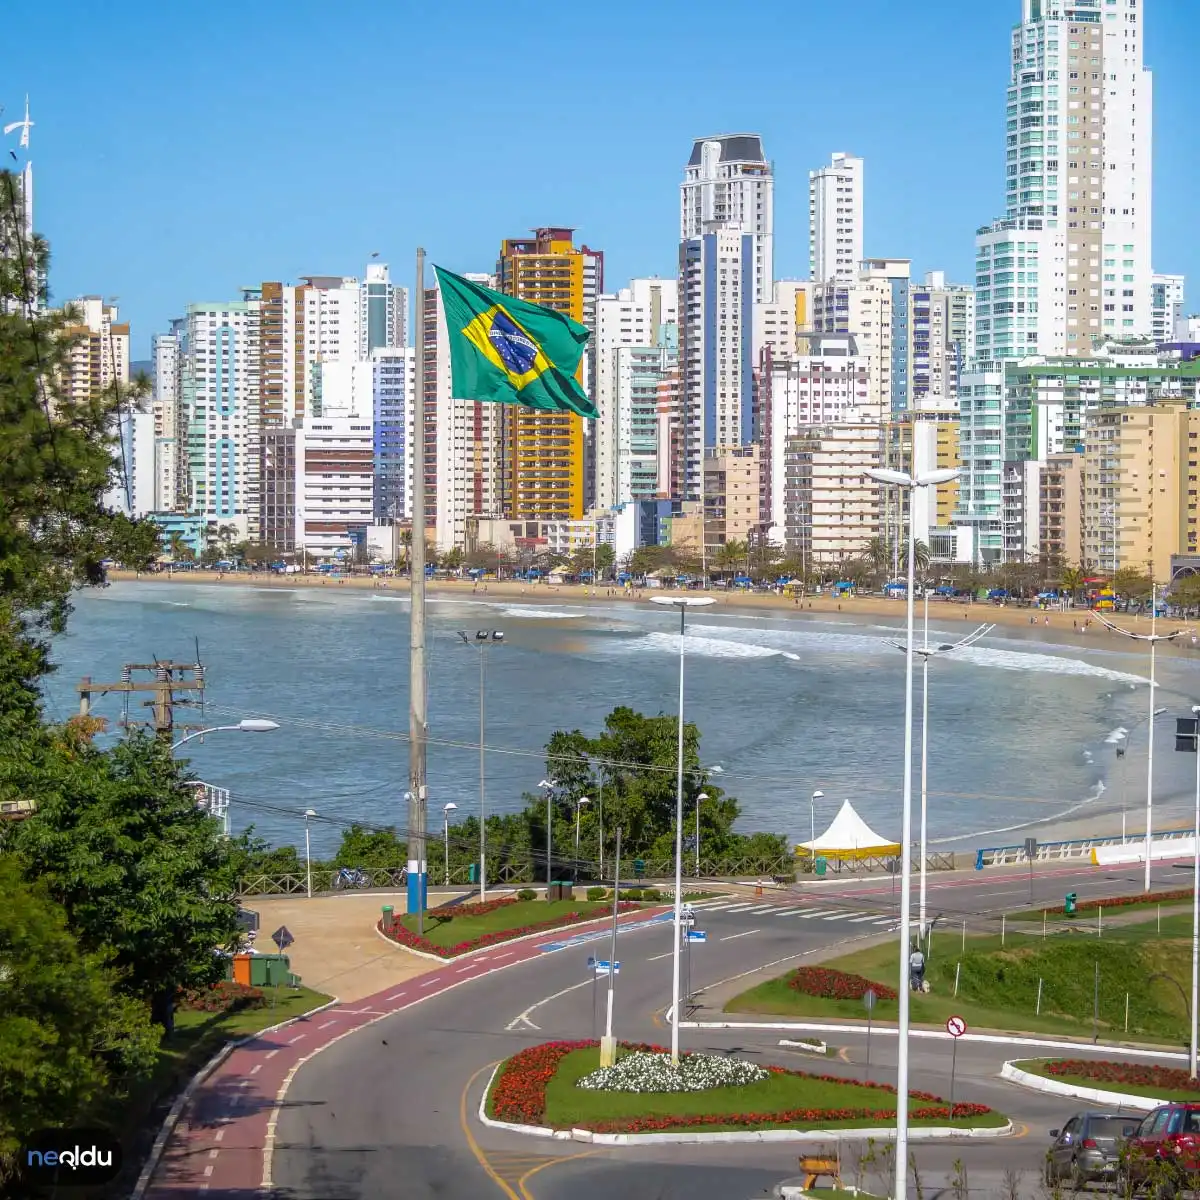 Brezilya Hakkında Bilgiler